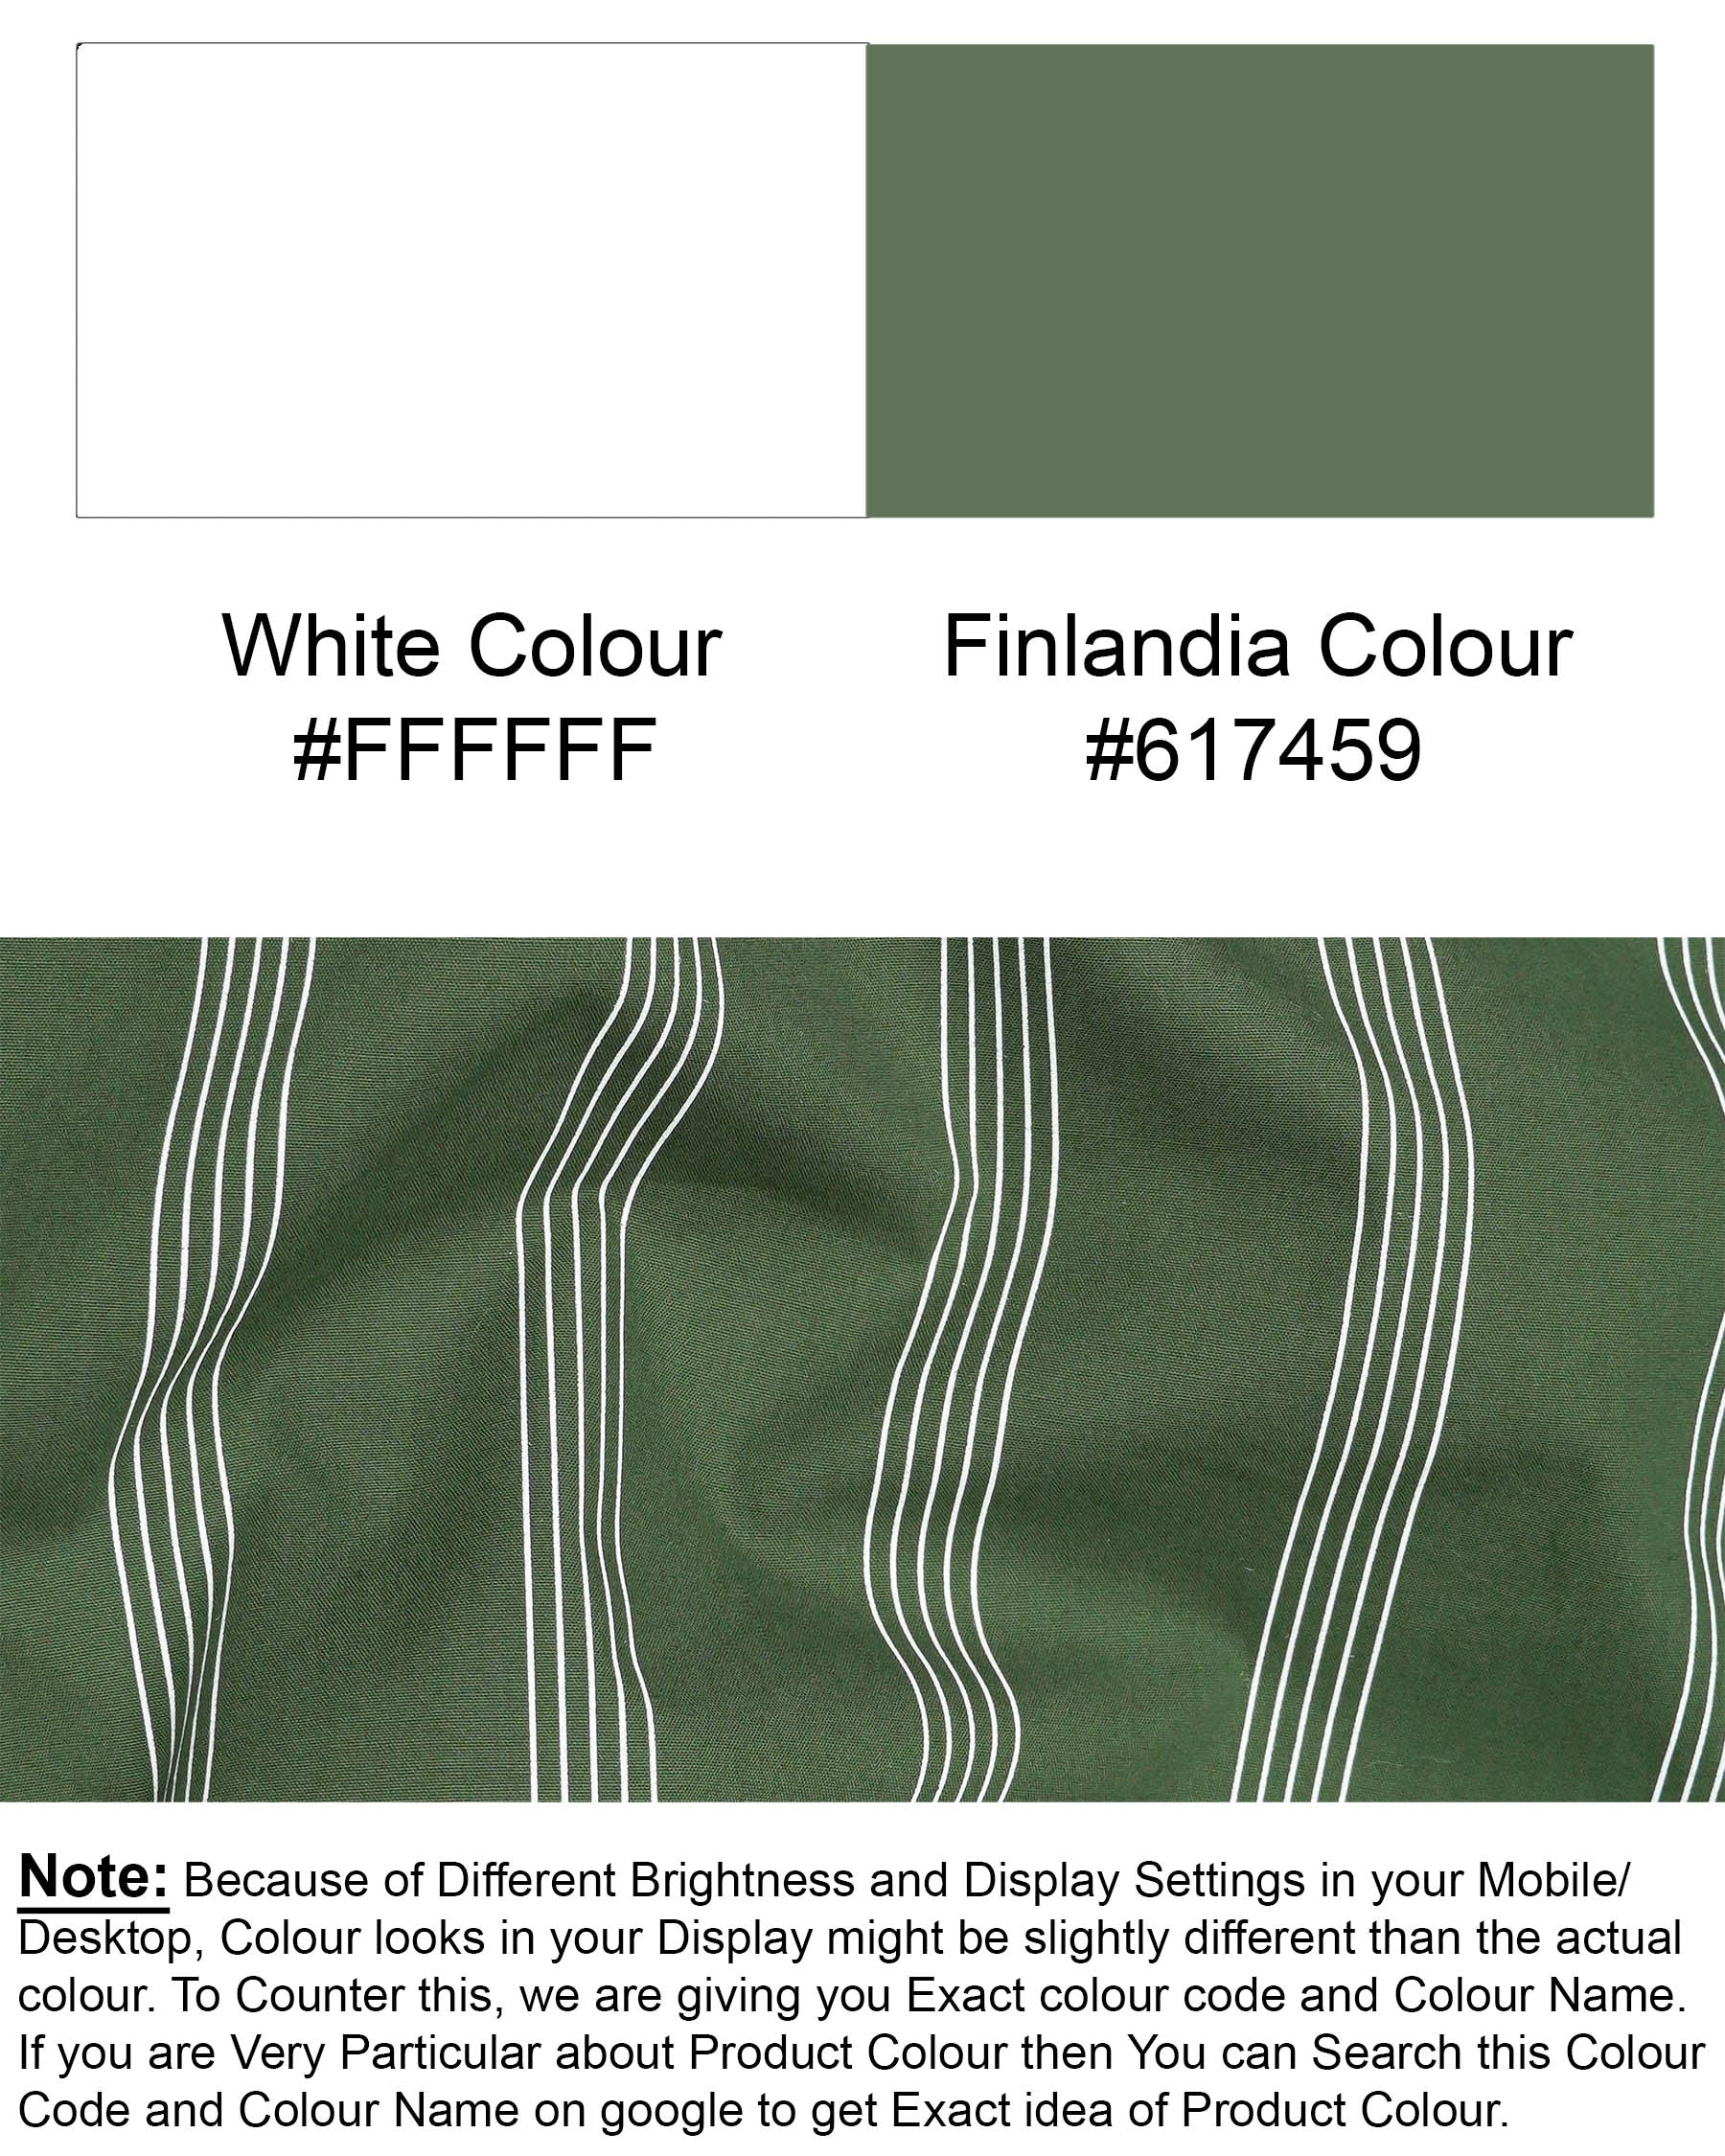 Finlandia Green Pin Striped Premium Cotton Kurta Shirt 7524-KS-38, 7524-KS-H-38, 7524-KS-39, 7524-KS-H-39, 7524-KS-40, 7524-KS-H-40, 7524-KS-42, 7524-KS-H-42, 7524-KS-44, 7524-KS-H-44, 7524-KS-46, 7524-KS-H-46, 7524-KS-48, 7524-KS-H-48, 7524-KS-50, 7524-KS-H-50, 7524-KS-52, 7524-KS-H-52